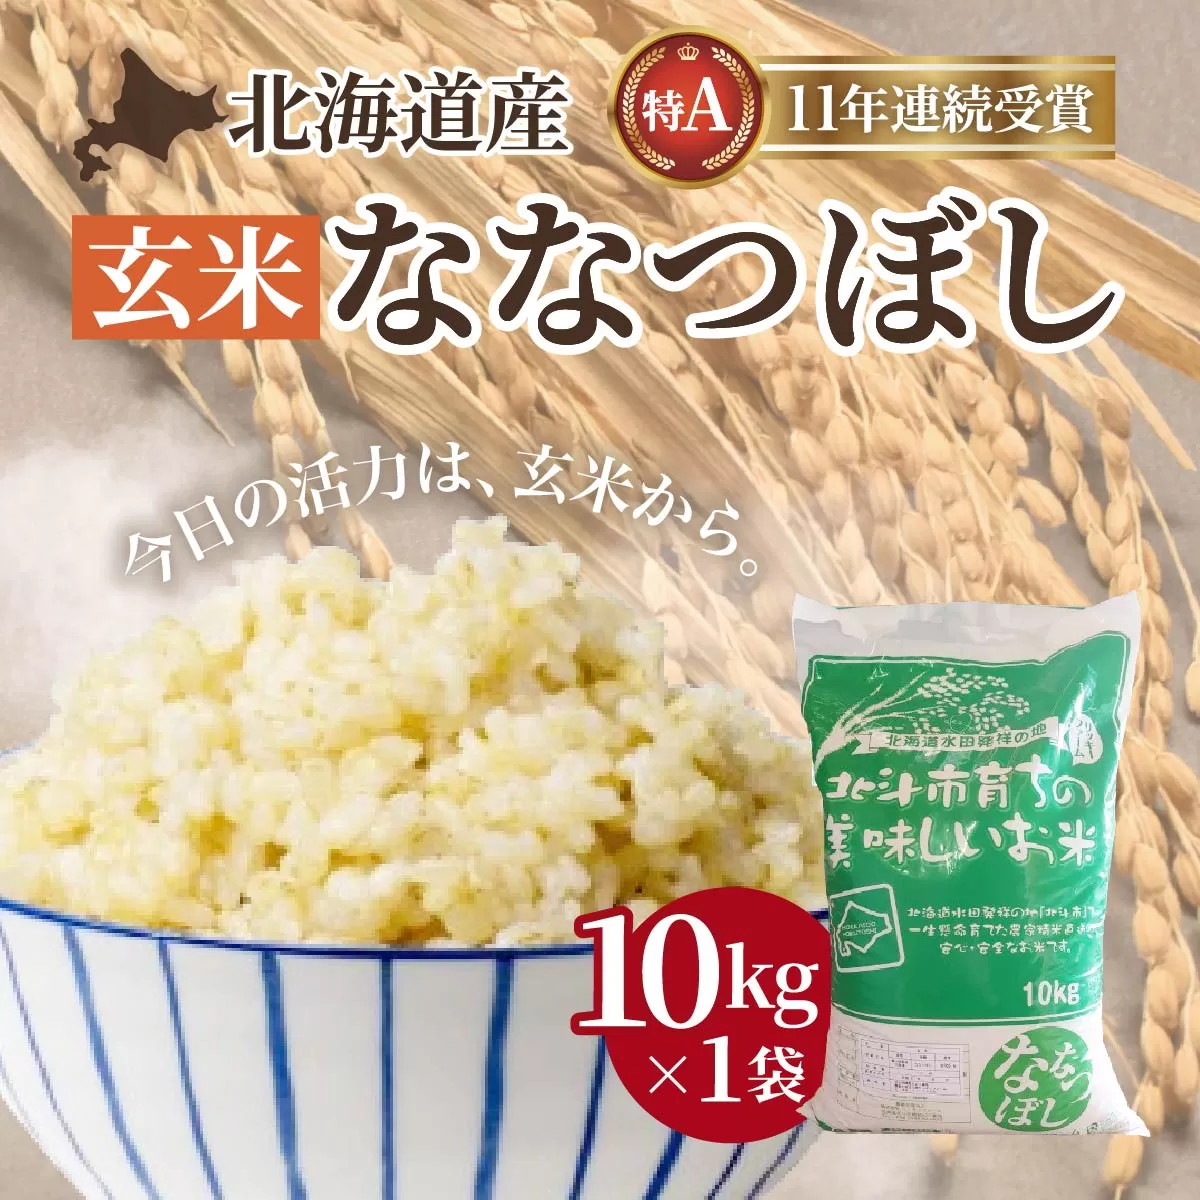 北海道産 特Aランク ななつぼし10kg【玄米】 HOKK011